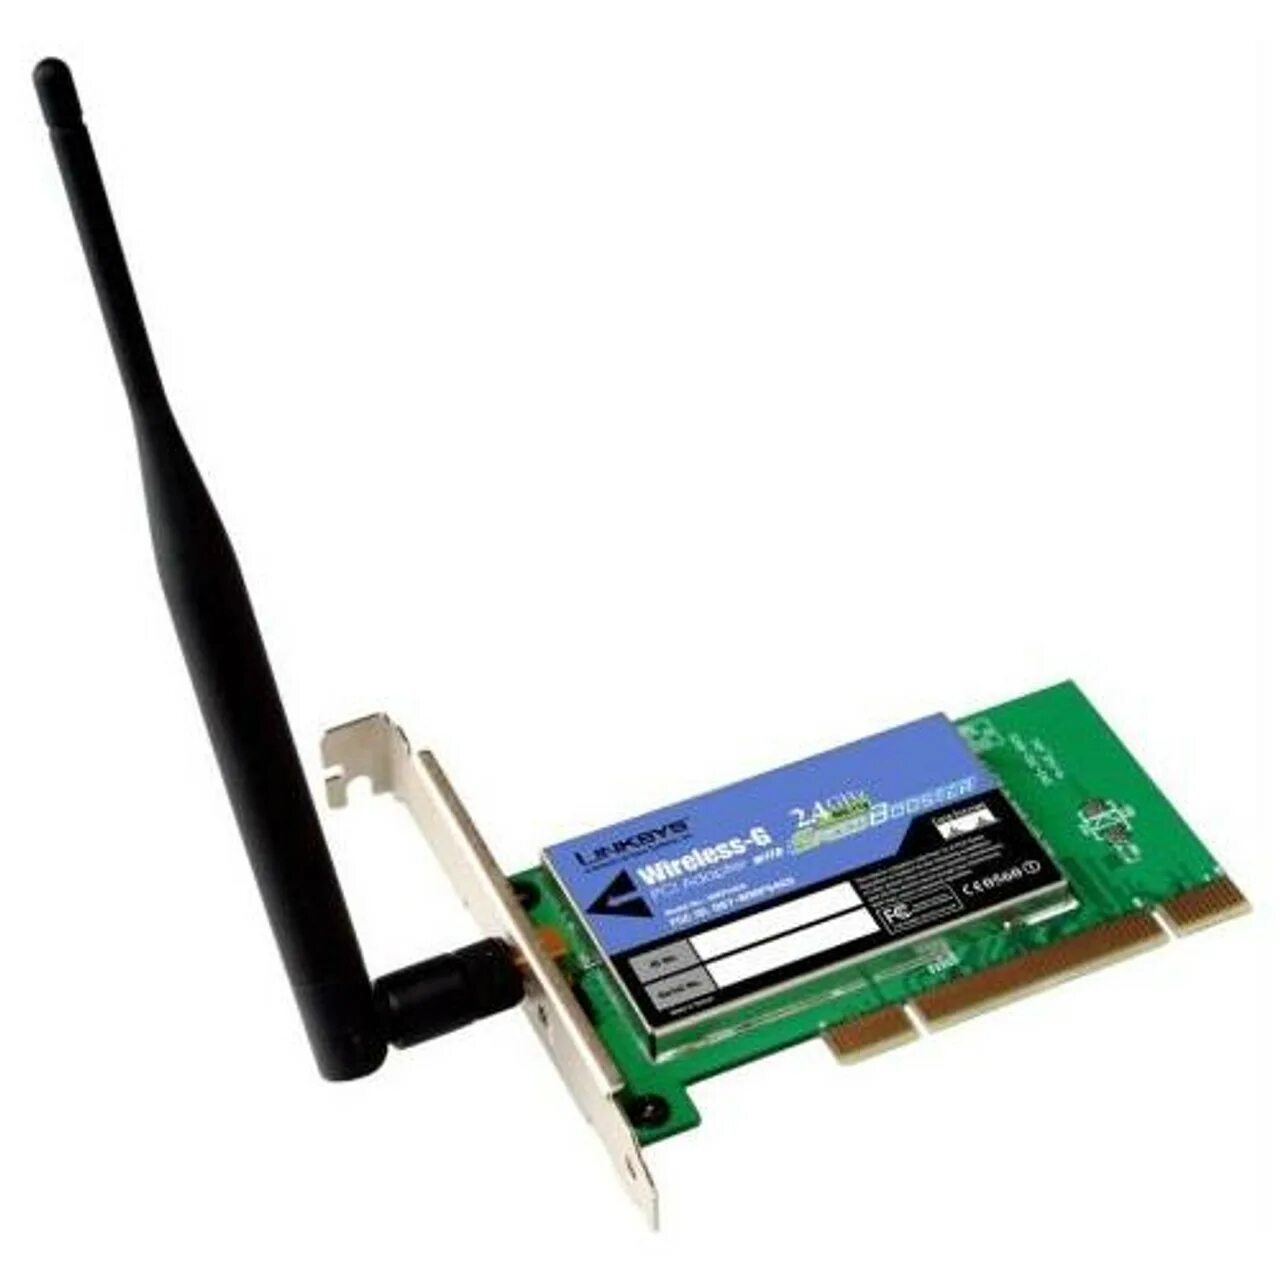 Сетевая карта lan. Linksys wmp54g v4.1 Wireless-g PCI Adapter. Wi-Fi адаптер Linksys wga54g. Broadcom 802.11g Network Adapter. Wi-Fi адаптер Linksys wusb600n.